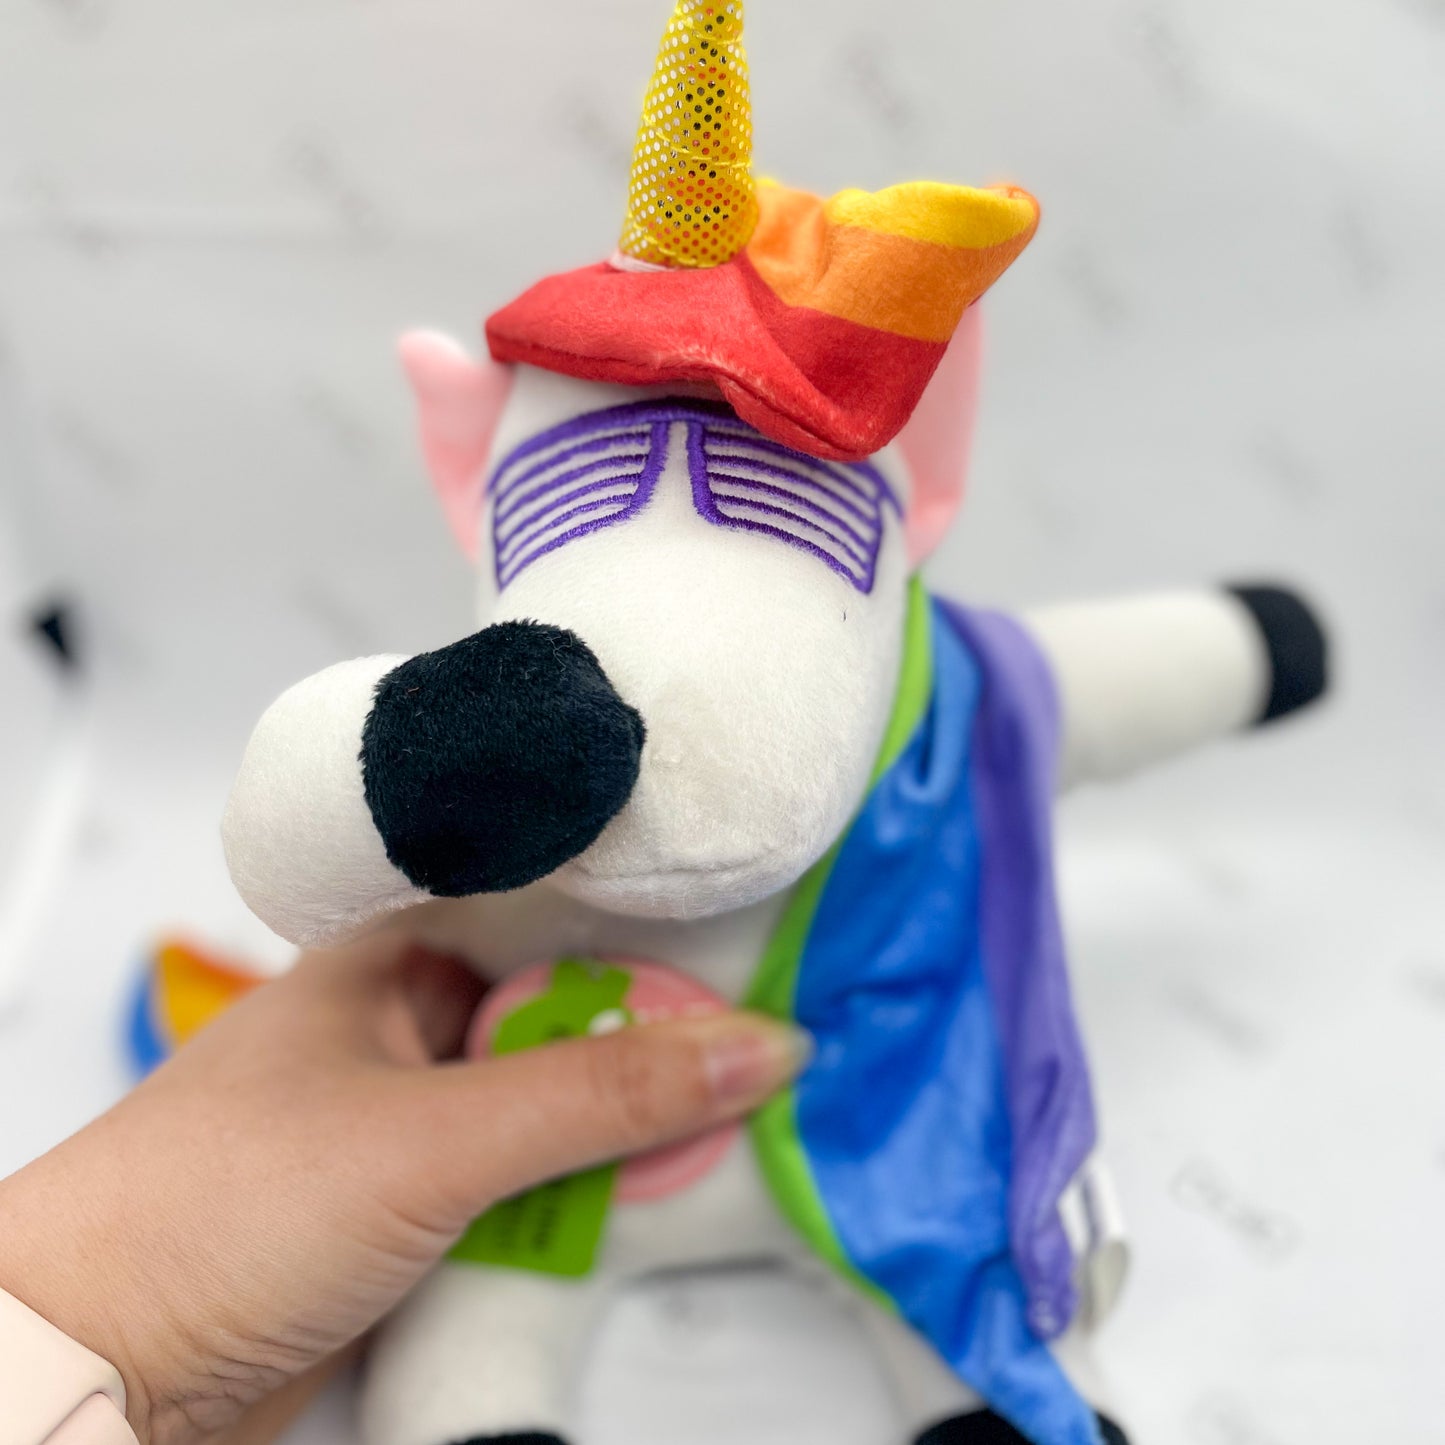 dab the unicorn - dog toy